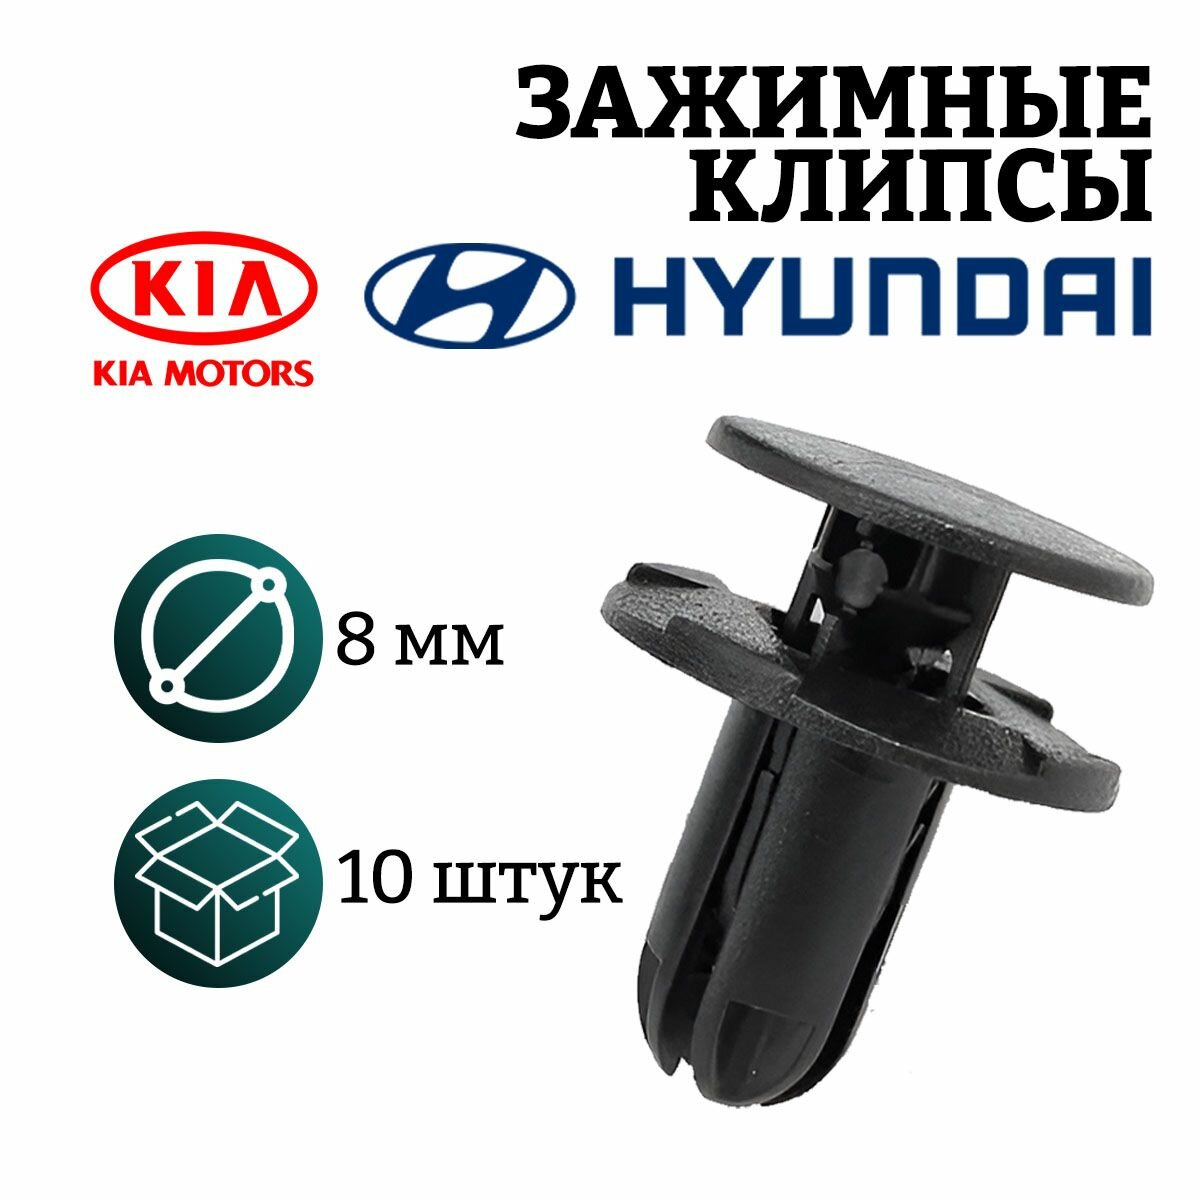 Клипсы для автомобиля крепежные пистоны набор для KIA Hyundai Киа Хендай установка Бампер Защита Отделка Крылья Подкрылки